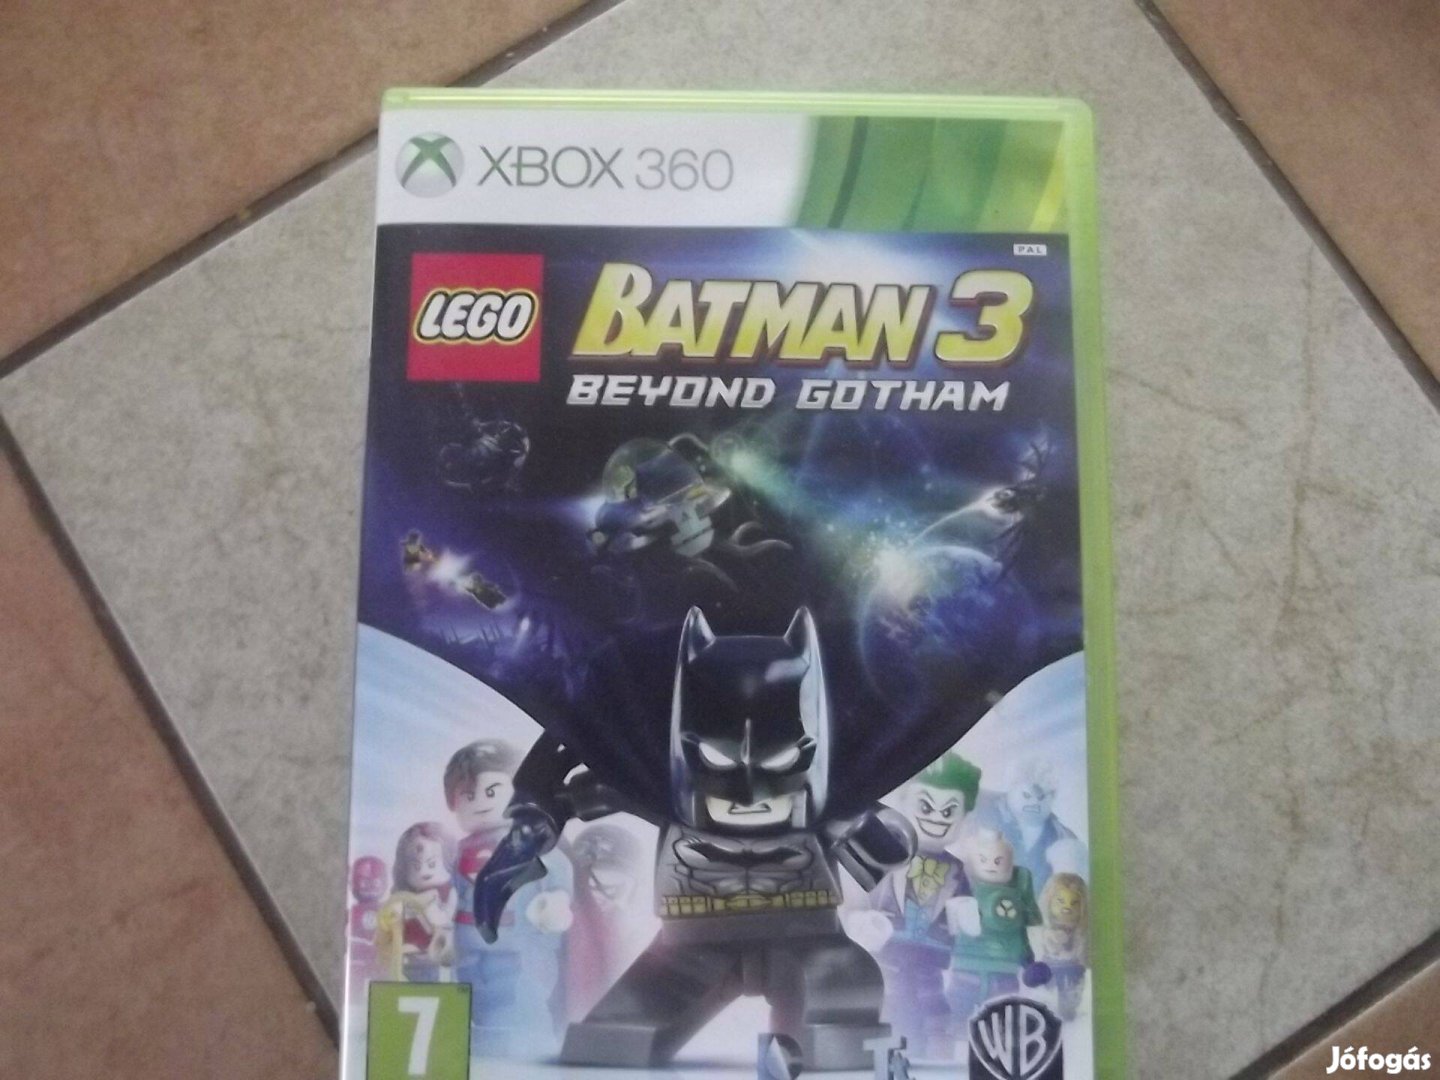 X-128 Xbox 360 Eredeti Játék : Lego Batman 3 Beyond Gotham